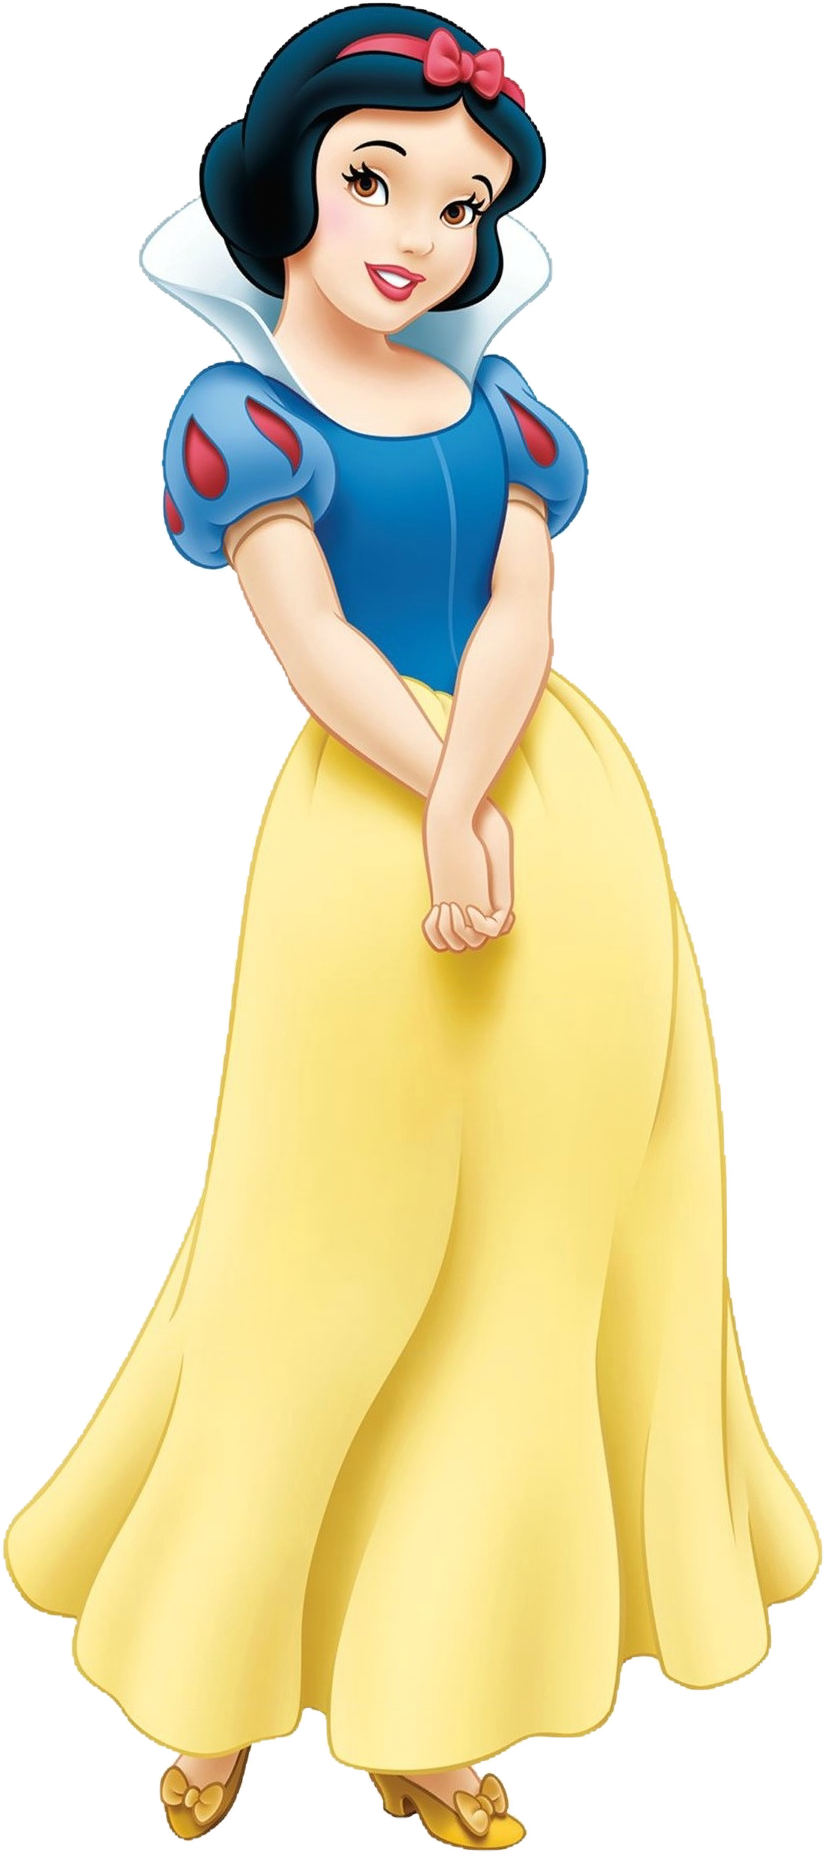 Đừng bỏ lỡ hình ảnh Snow White PNG tuyệt đẹp với độ phân giải cao, chất lượng hoàn hảo cho những trang trí và chỉnh sửa hình ảnh của bạn! Sắc trắng tinh khôi của Snow White sẽ mang đến cho bạn cảm giác thanh lịch và tinh tế hơn bao giờ hết.